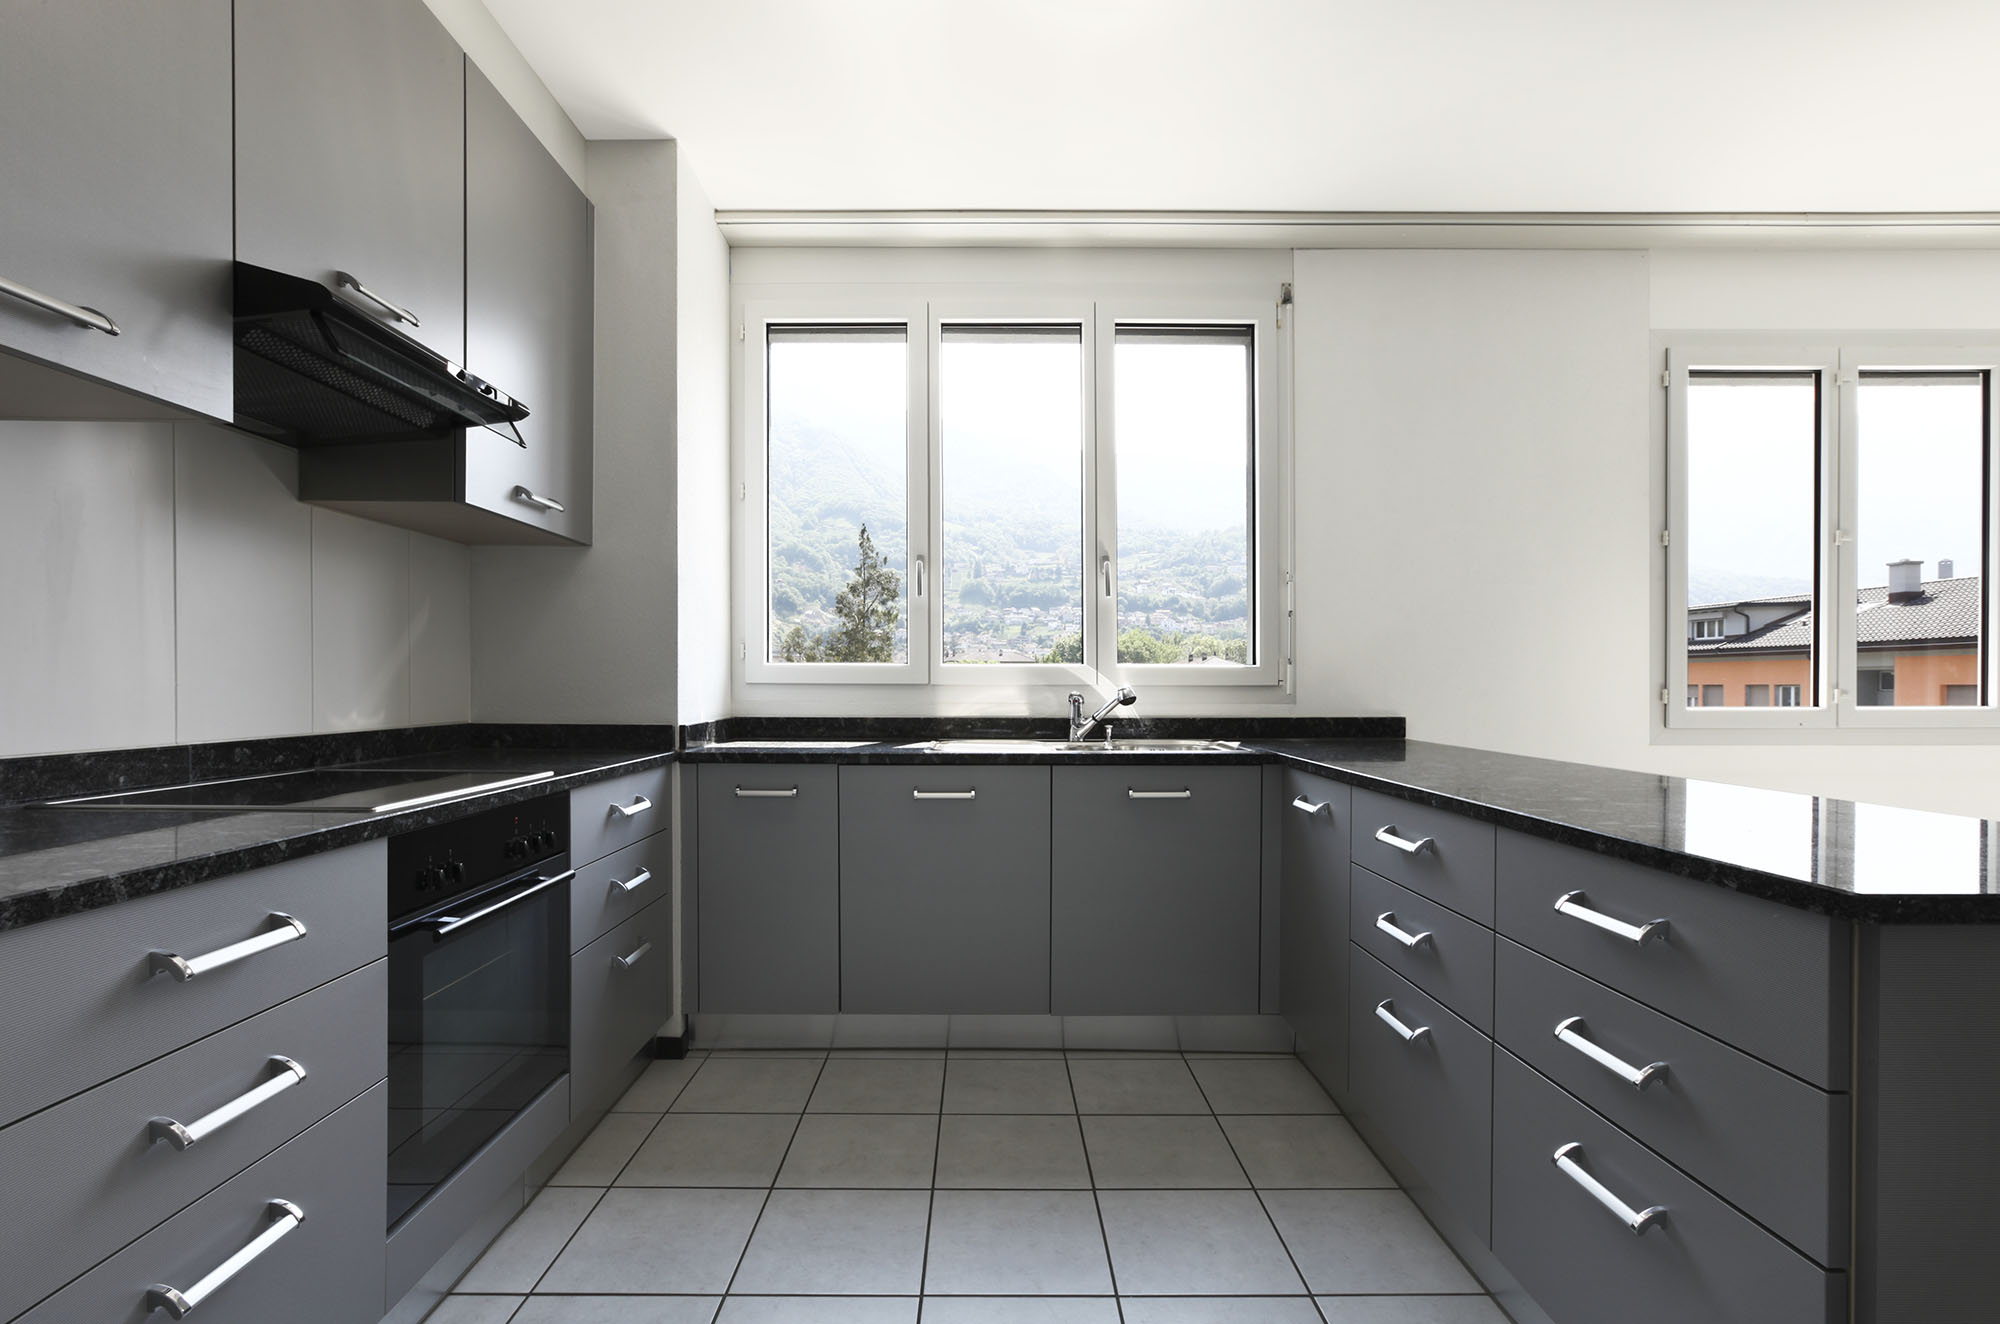 grey kitchen design pictures